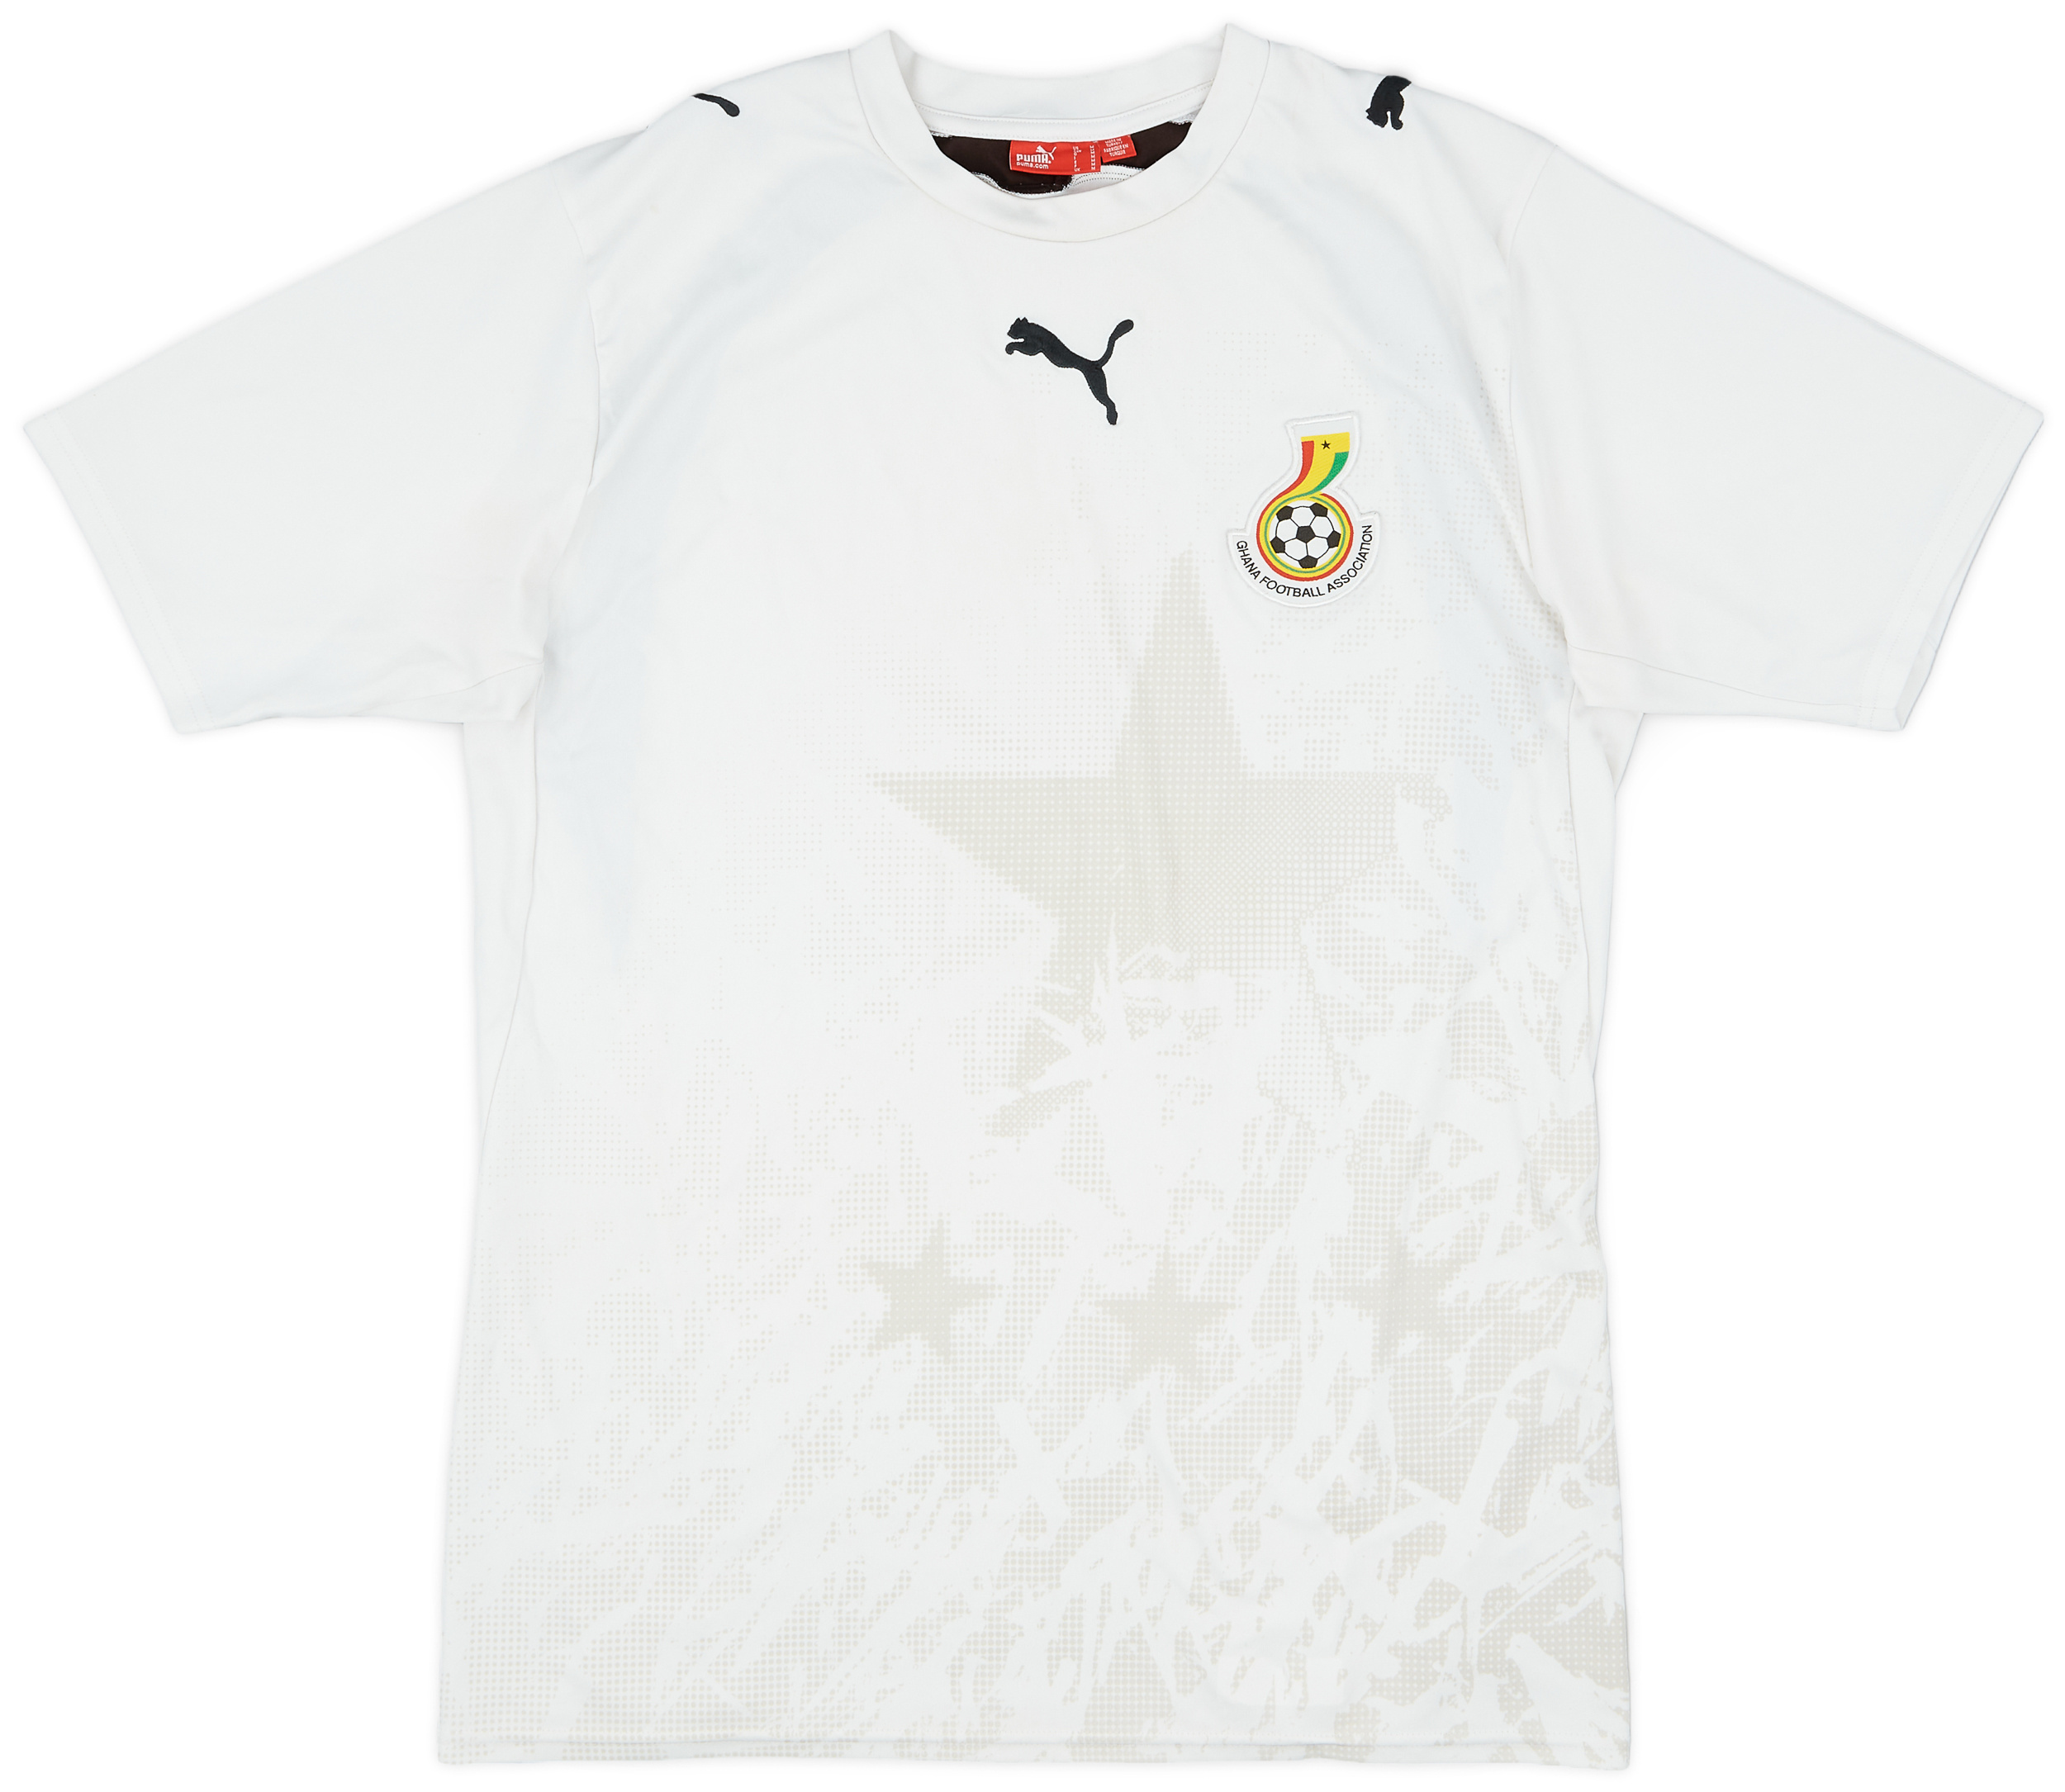 Retro Ghana Shirt